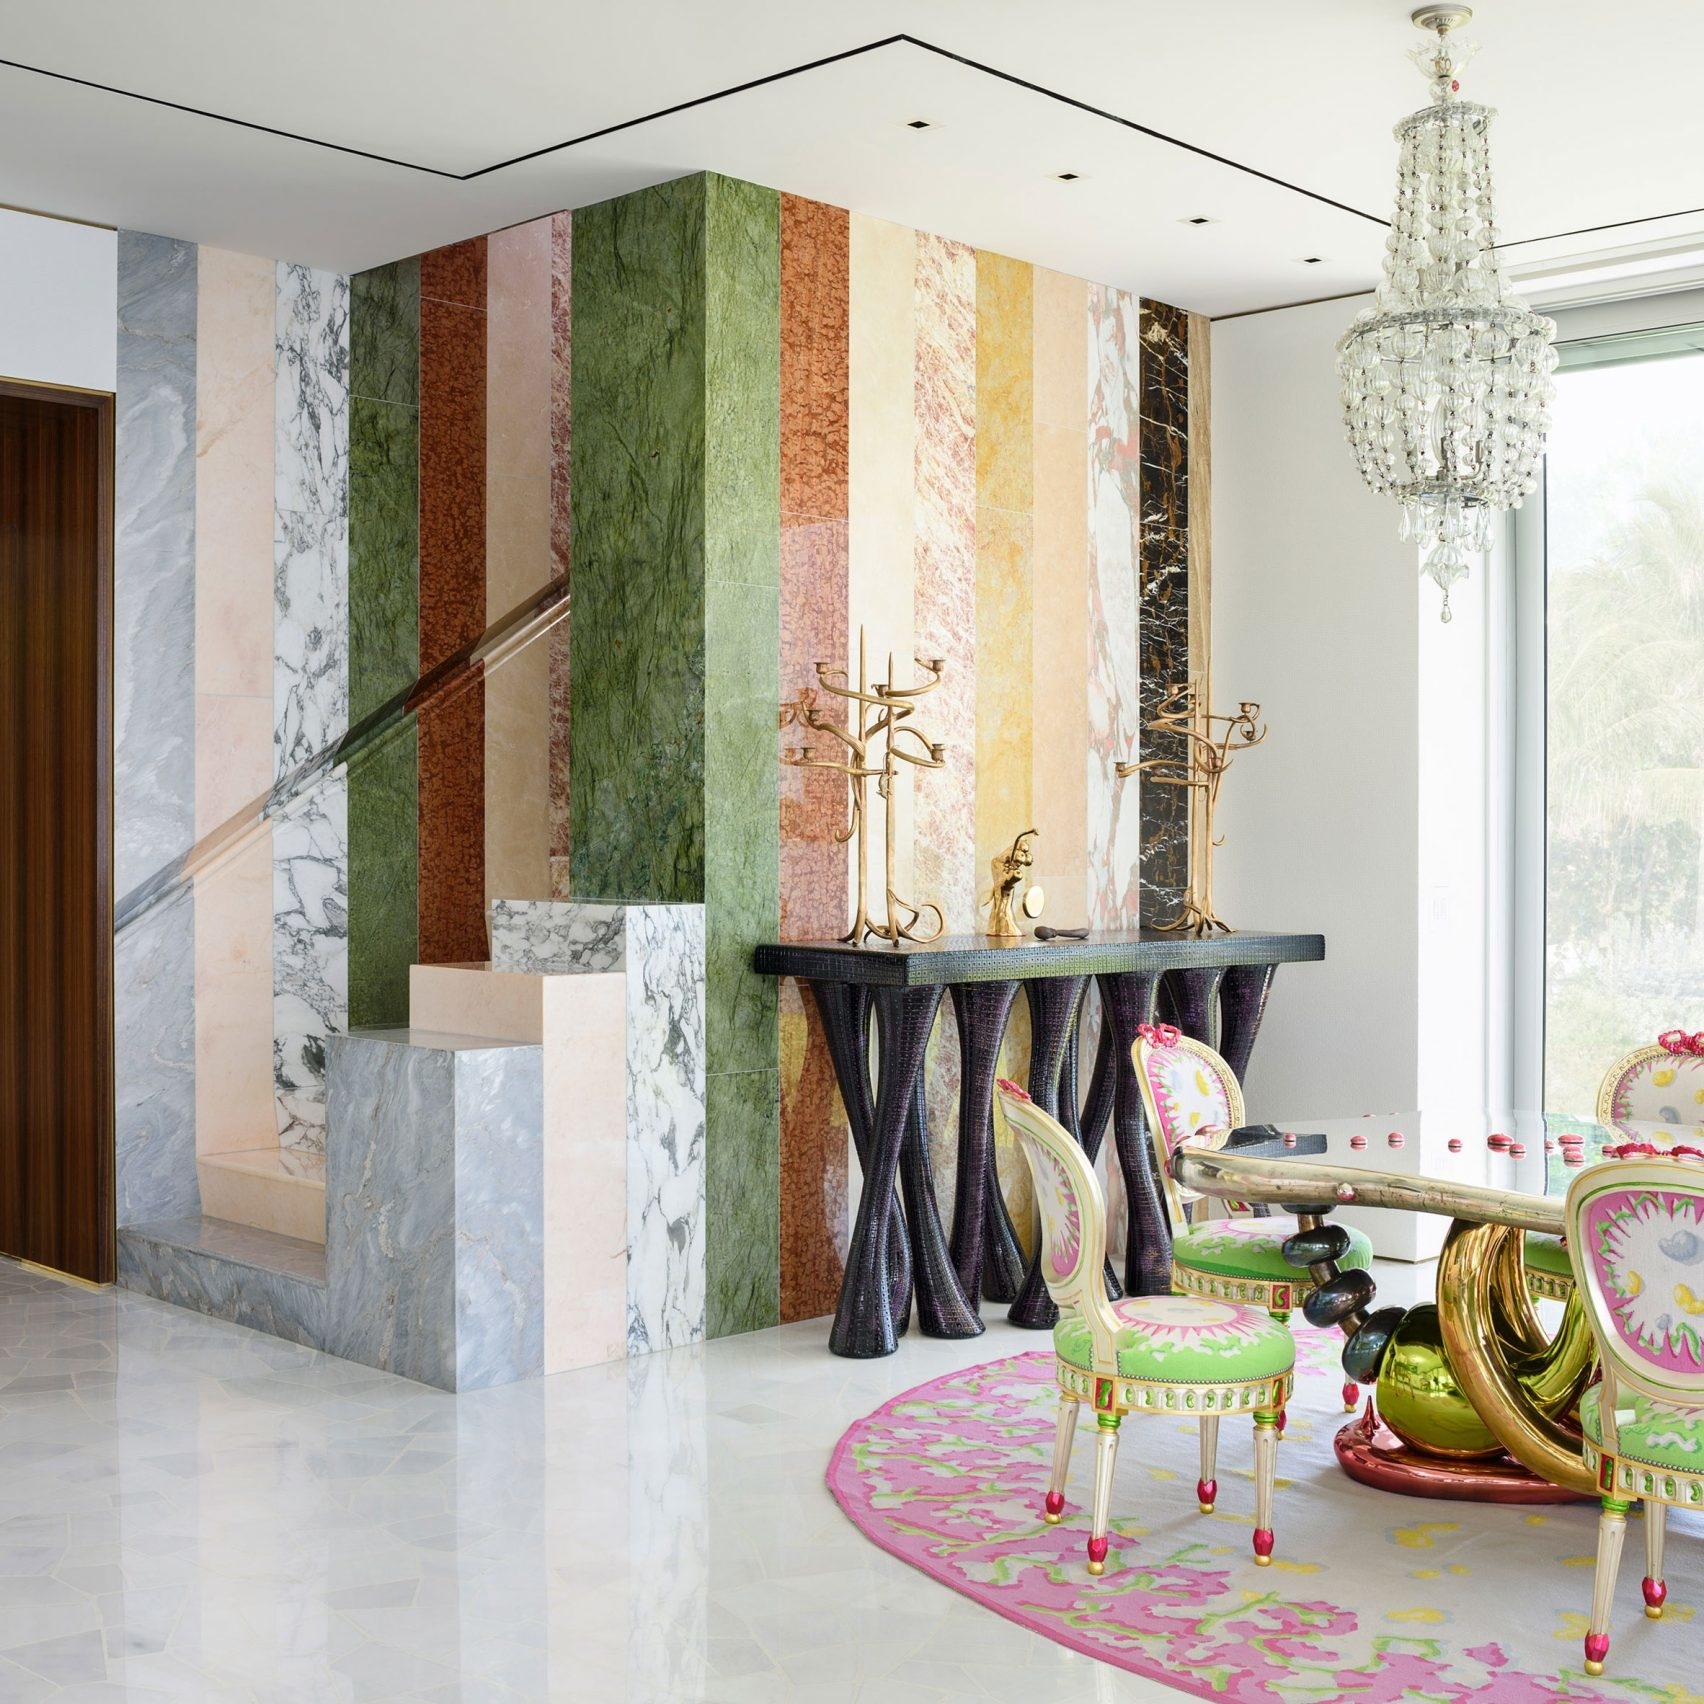 Không chỉ là những gam màu trung tính, đá cẩm thạch quý giá còn có nhiều màu sắc khác, khi kết hợp cùng nhau tạo nên một khối tường tuyệt đẹp, lại rất phù hợp với phong cách trang trí đa sắc màu của nội thất xung quanh.